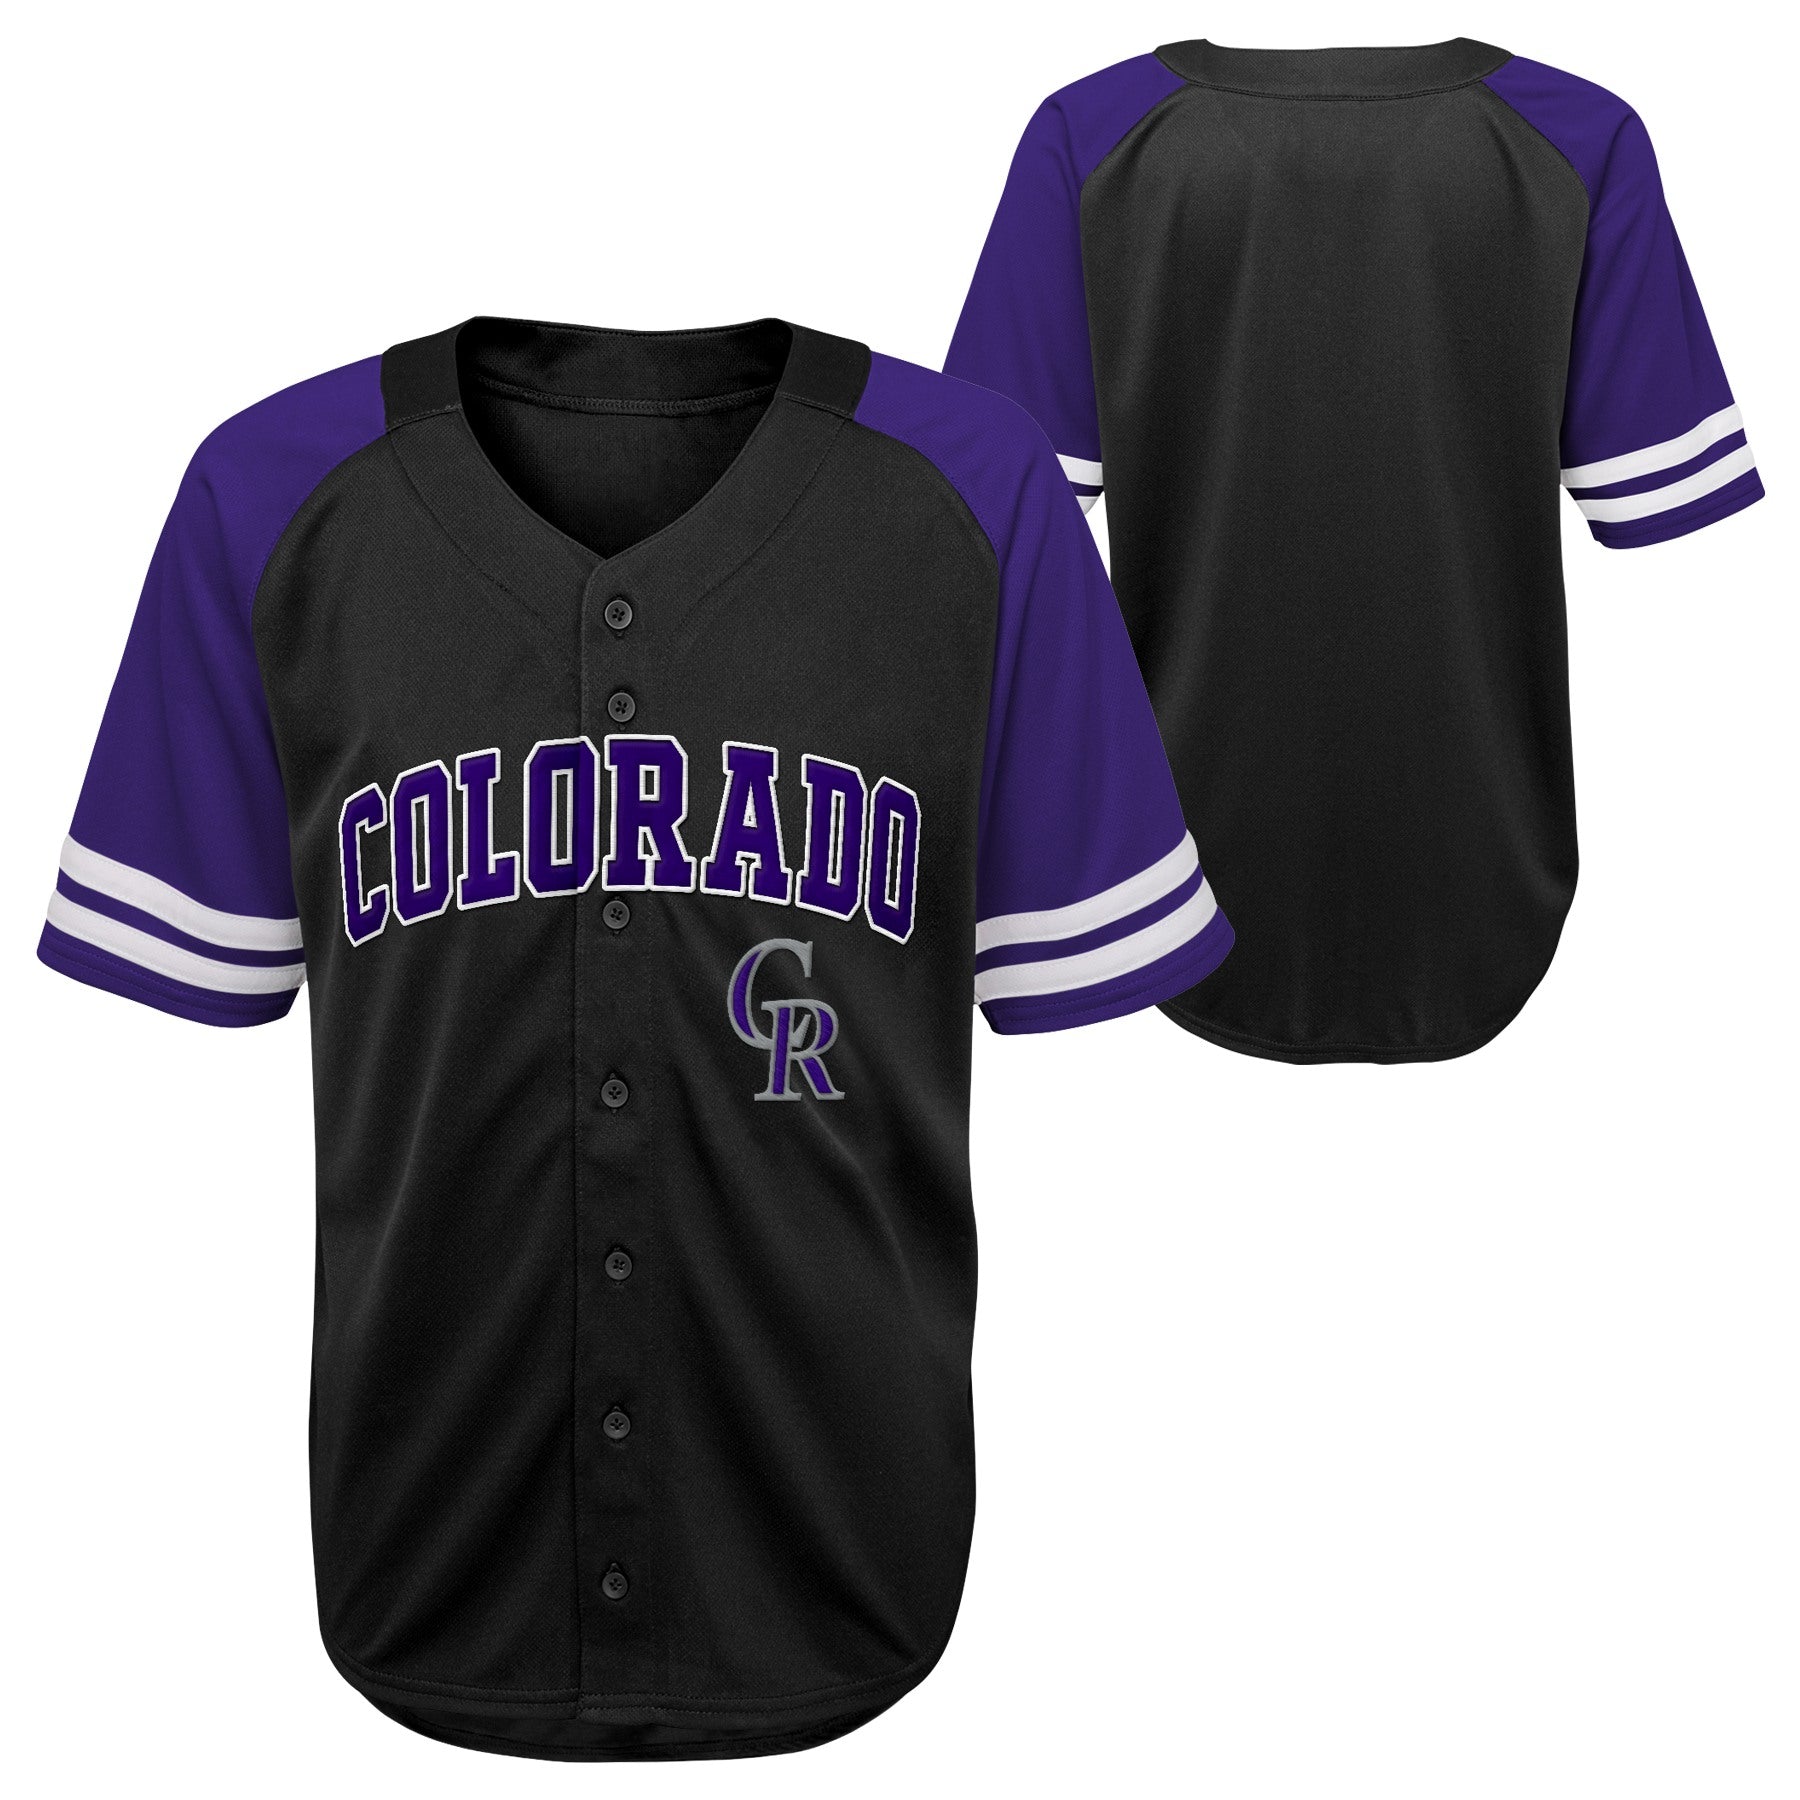 rockies baseball jersey purple